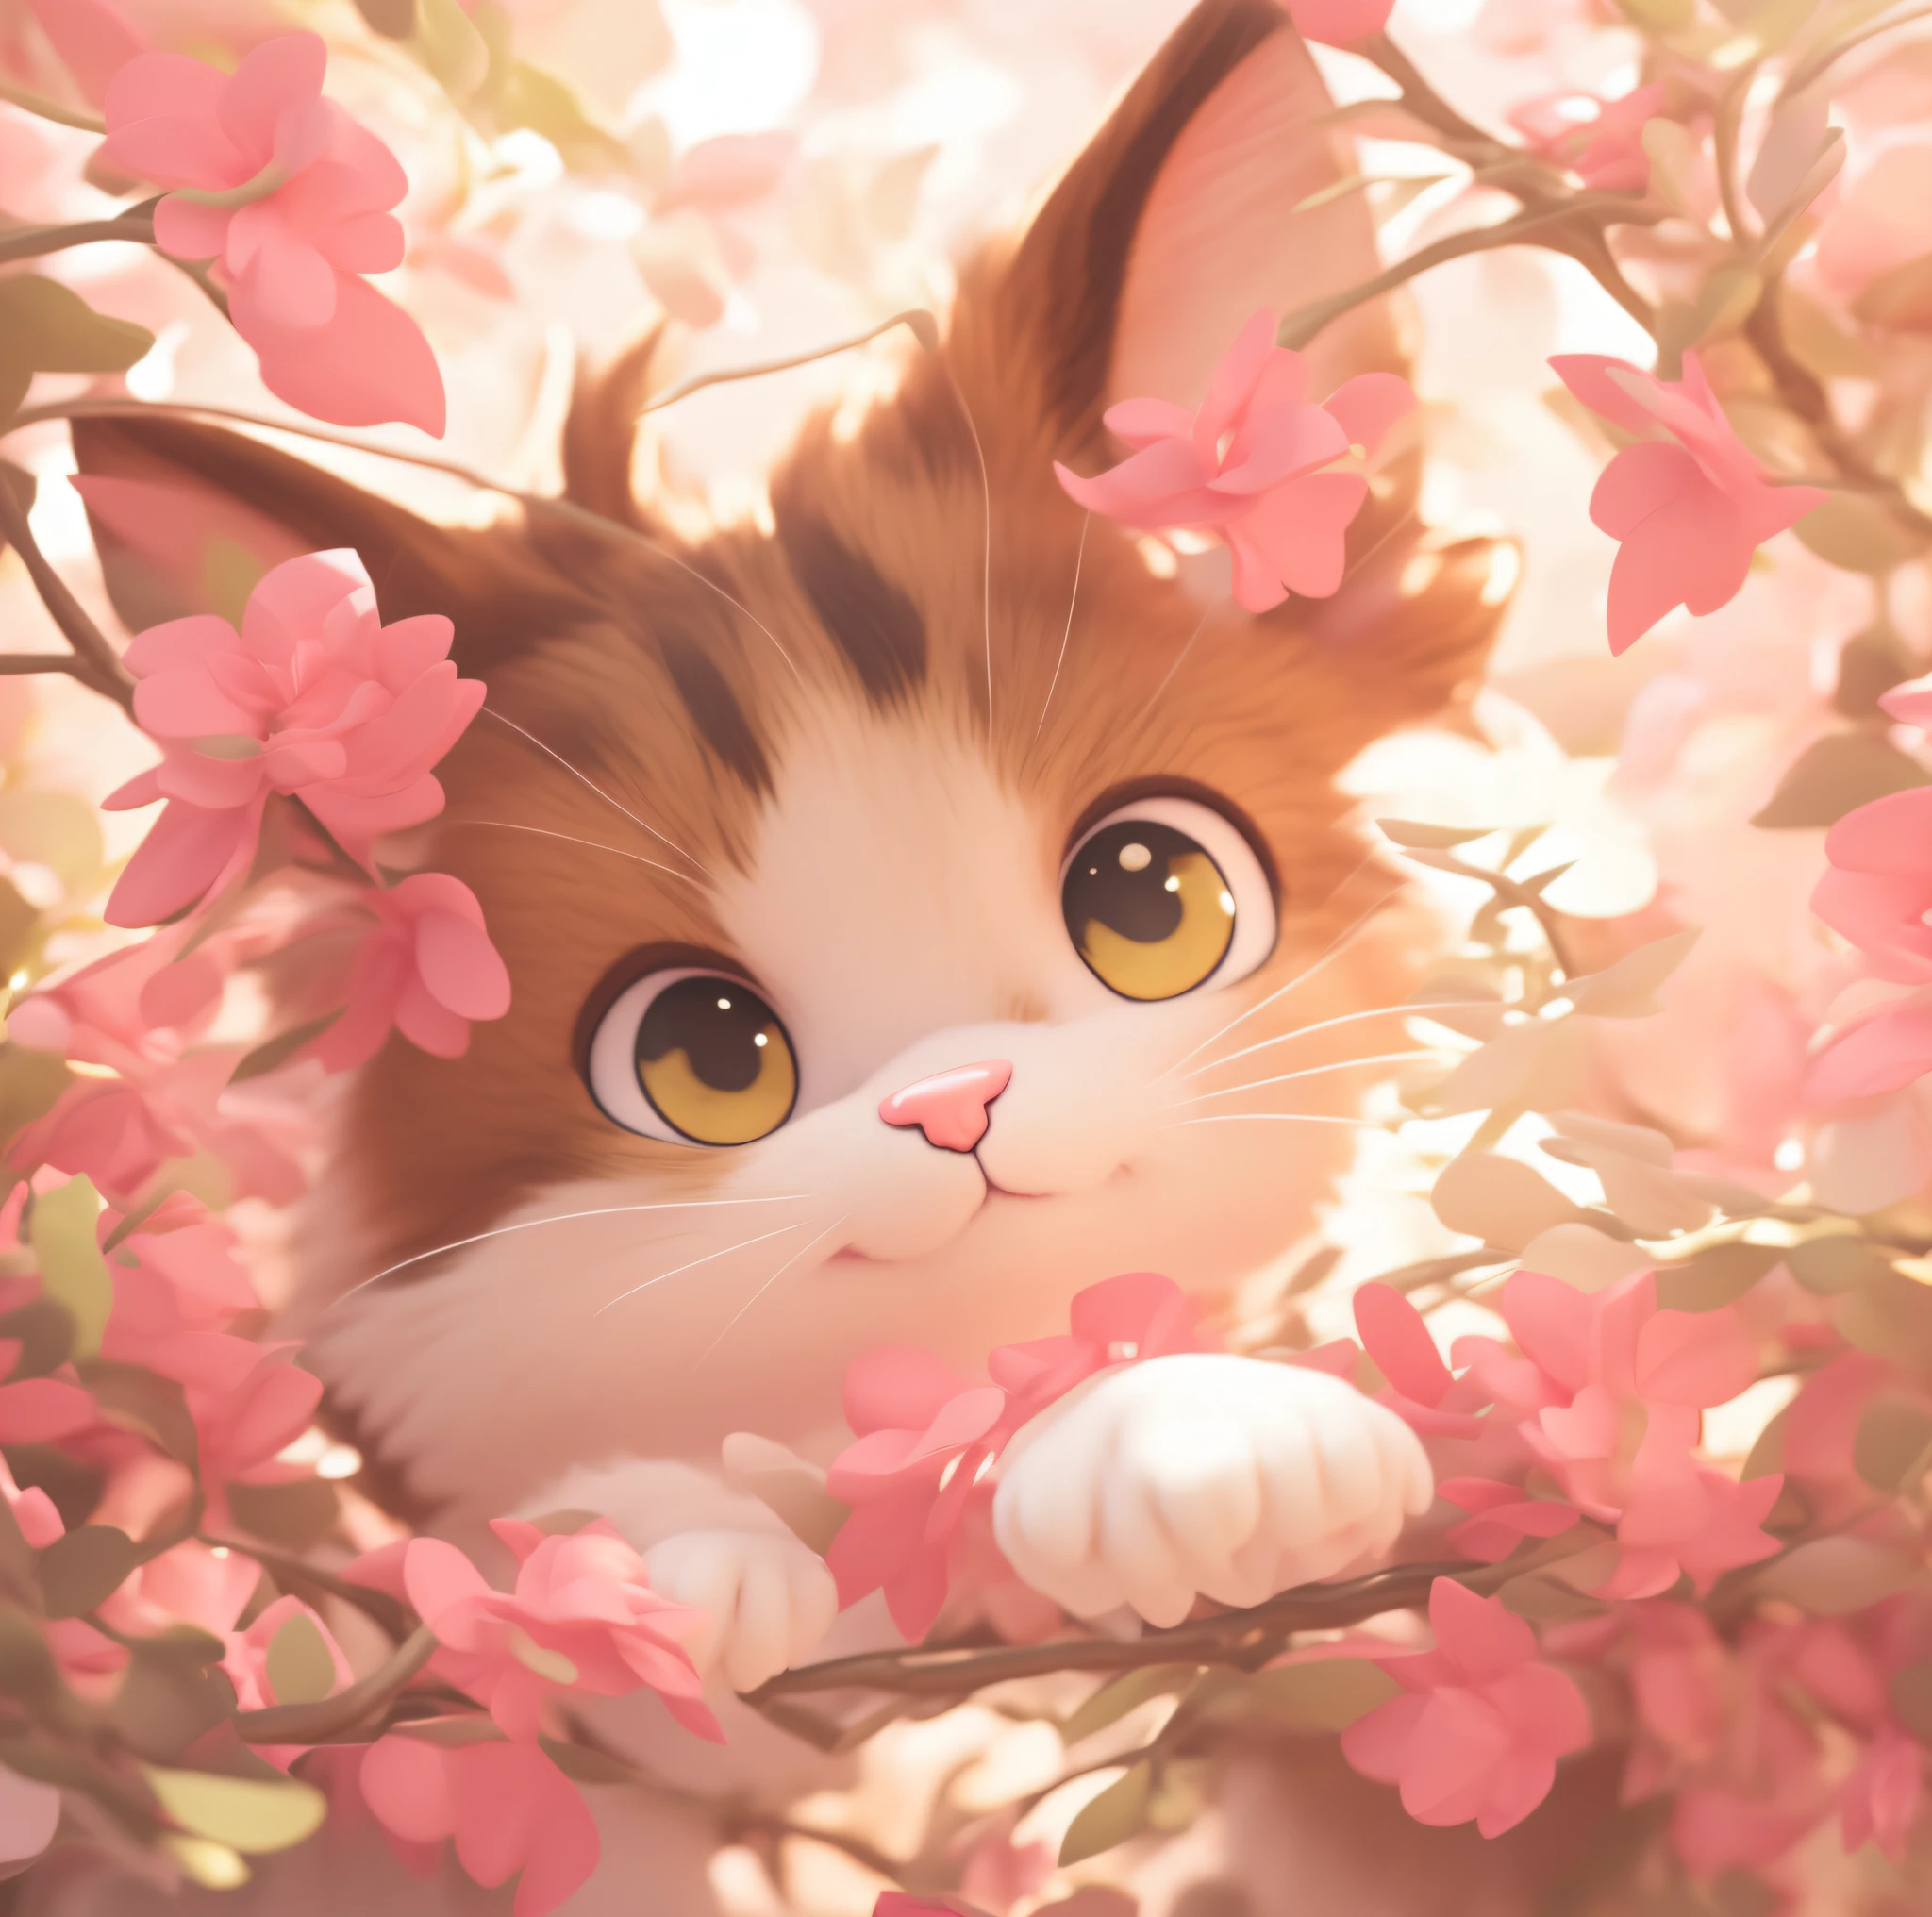 毛茸茸的小貓, 可愛細緻的數位藝術, 可愛的3D渲染, 可爱的数字绘画, 可愛的數位藝術, 英雄聯盟《赤壁》中的小貓, 可愛的小貓, 3d 渲染风格, 風格化 3D 渲染, 攪拌機 eevee 渲染, 風格化為 3D 渲染, 粉紅色的, 夢境